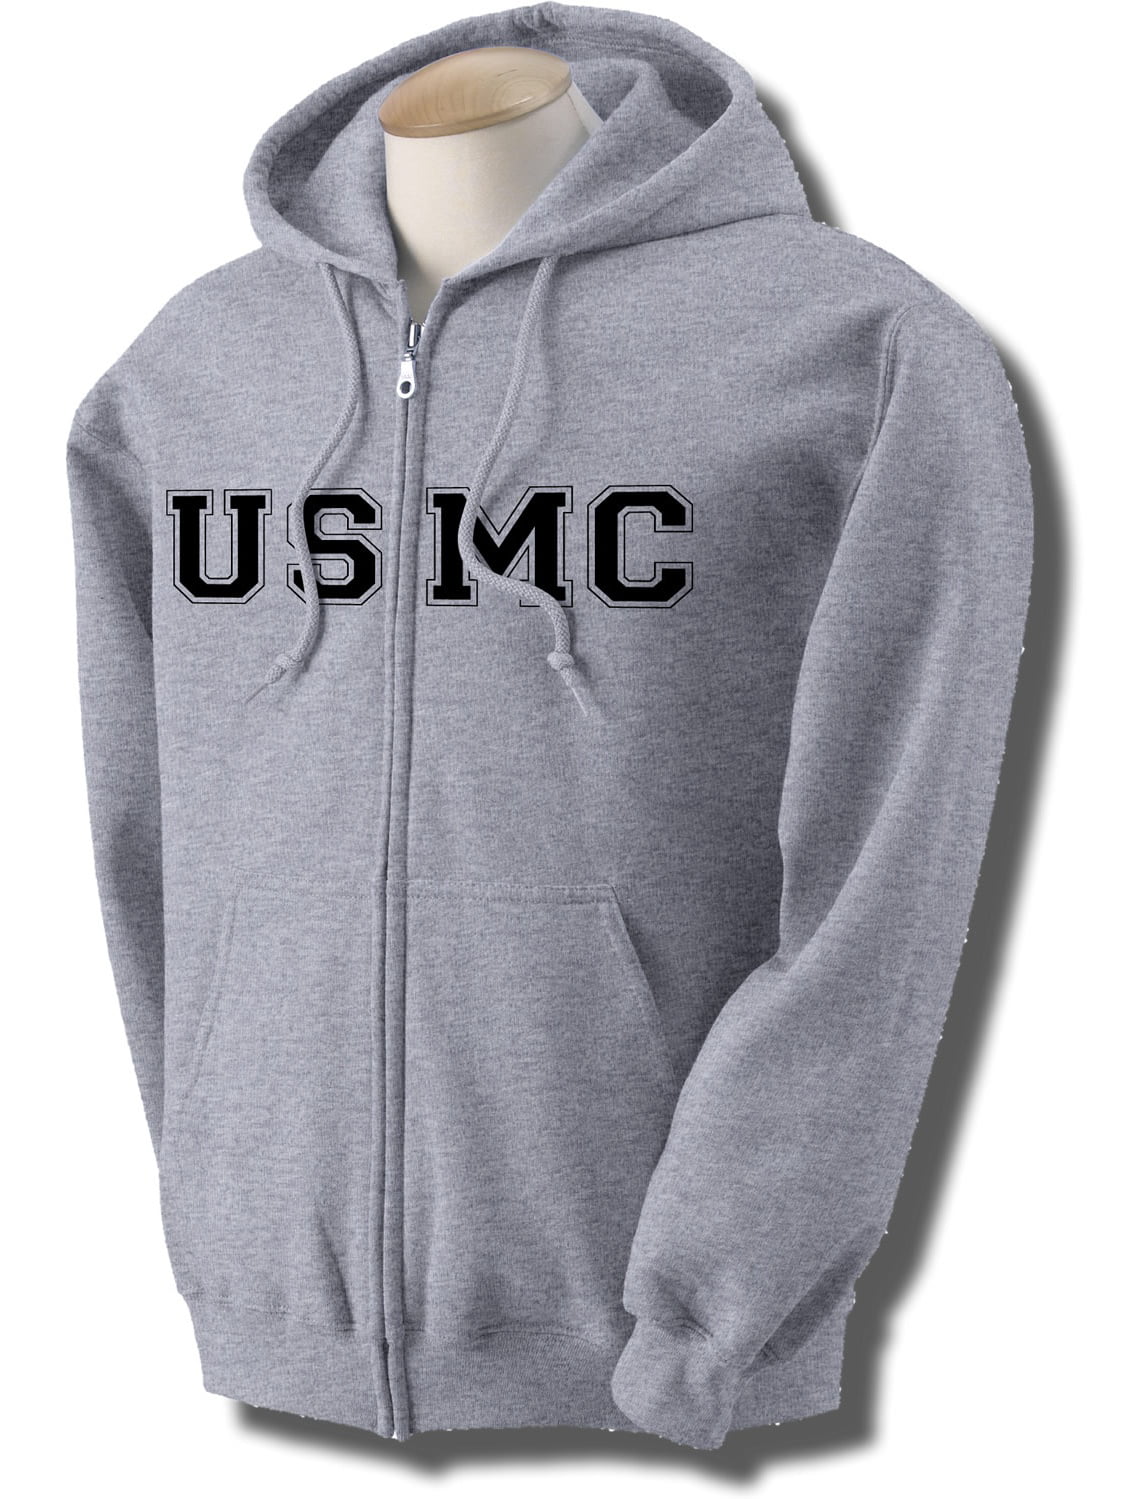 zerogravitee - USMC Full-Zip Hooded Sweatshirt in Gray - Walmart.com